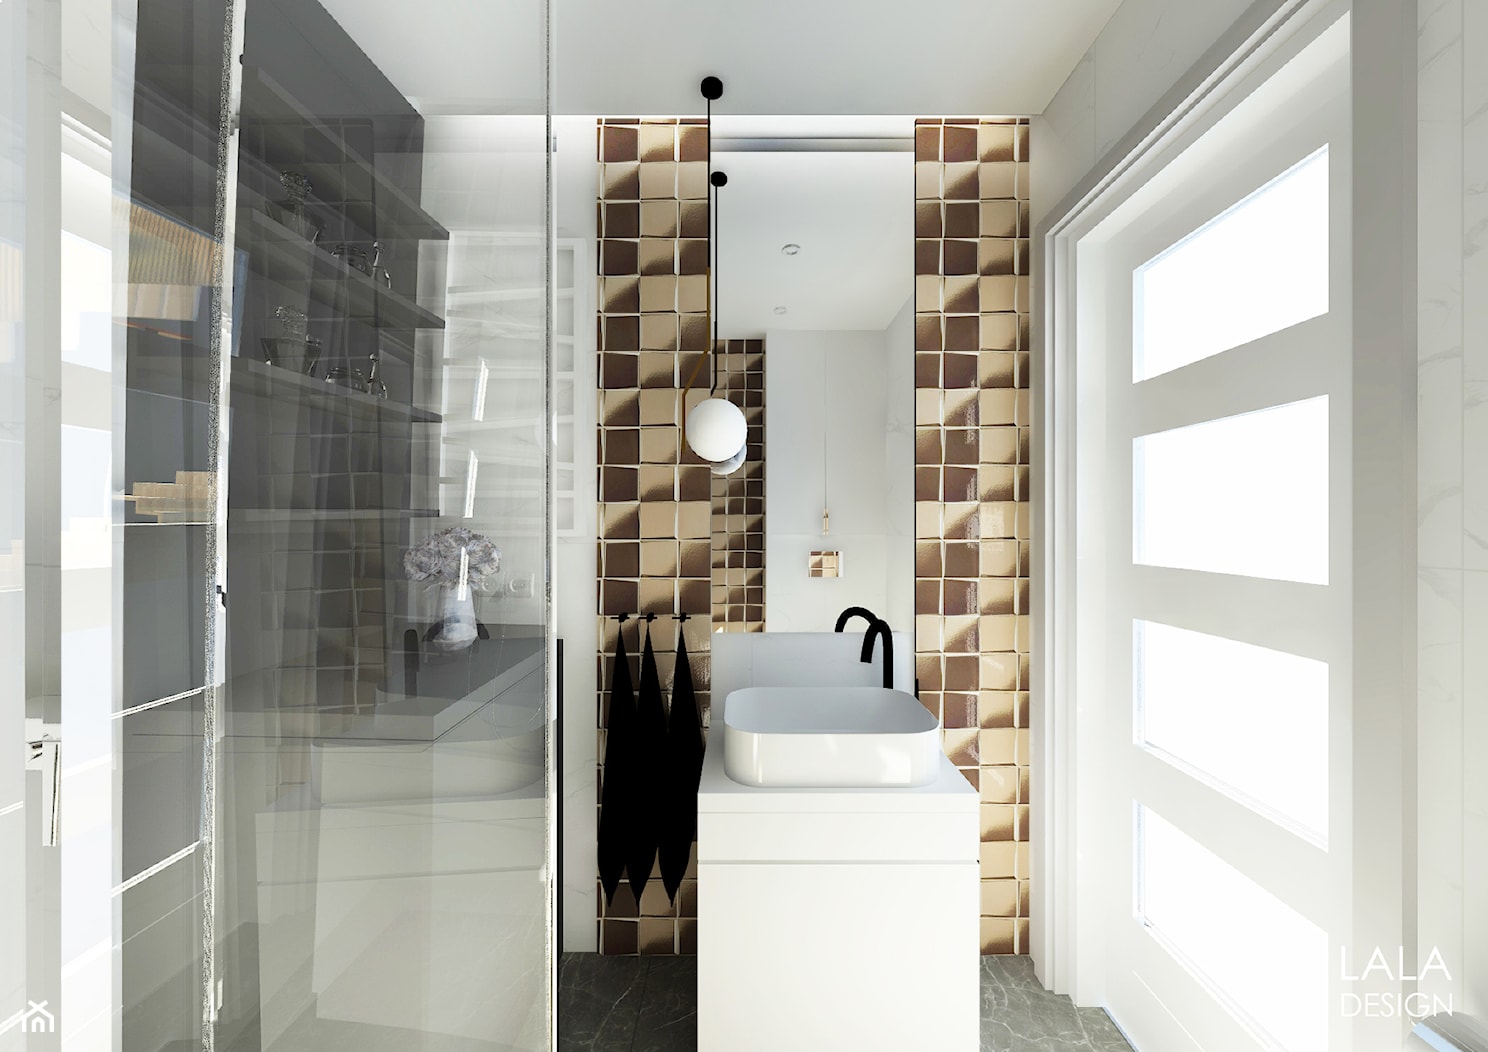 Mała łazienka ze złotem - zdjęcie od LALA DESIGN Projektowanie architektury i wnętrz - Homebook